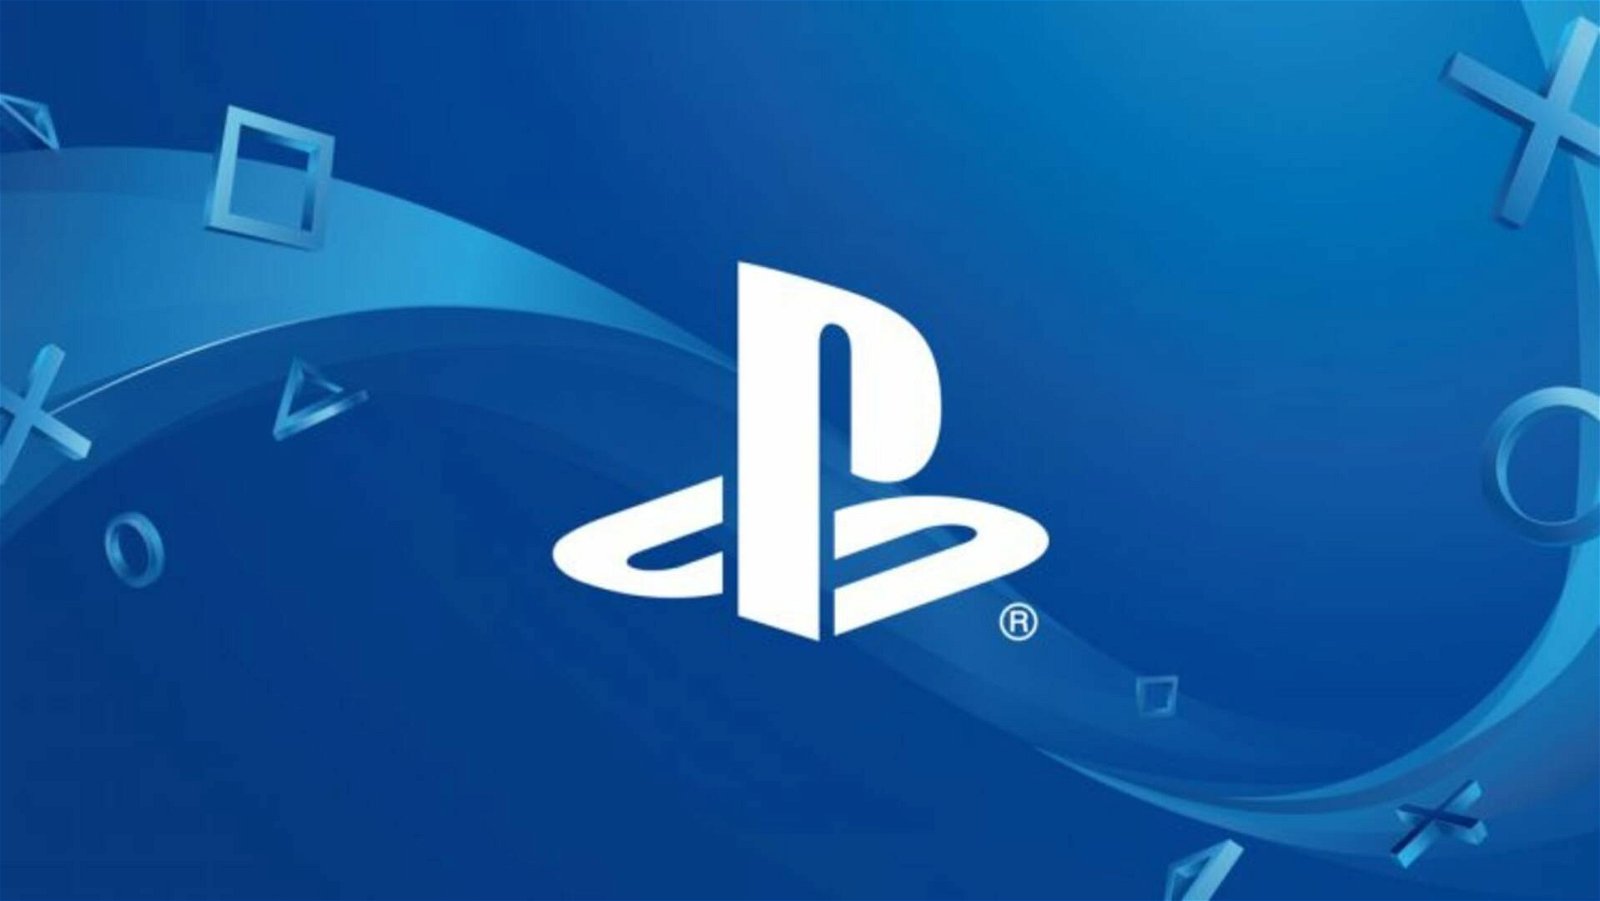 Una storica esclusiva PlayStation tornerà nel 2023? C'è un indizio